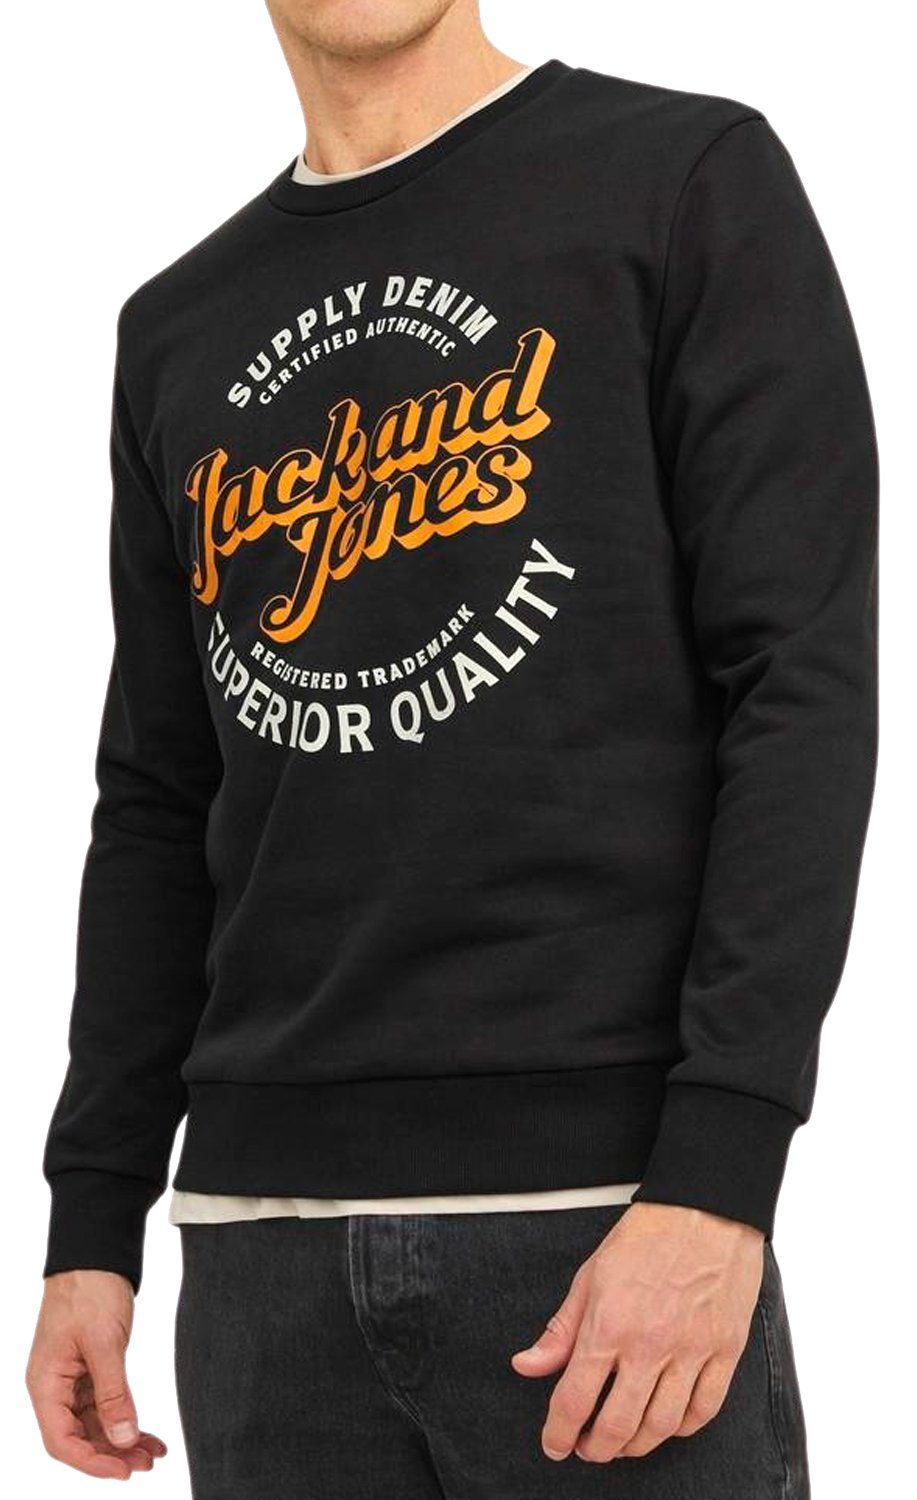 (2er-Pack) Pullover flauschiger Logo Sweatshirt Jack 6 Doppelpack Jones & Print Sweatmix